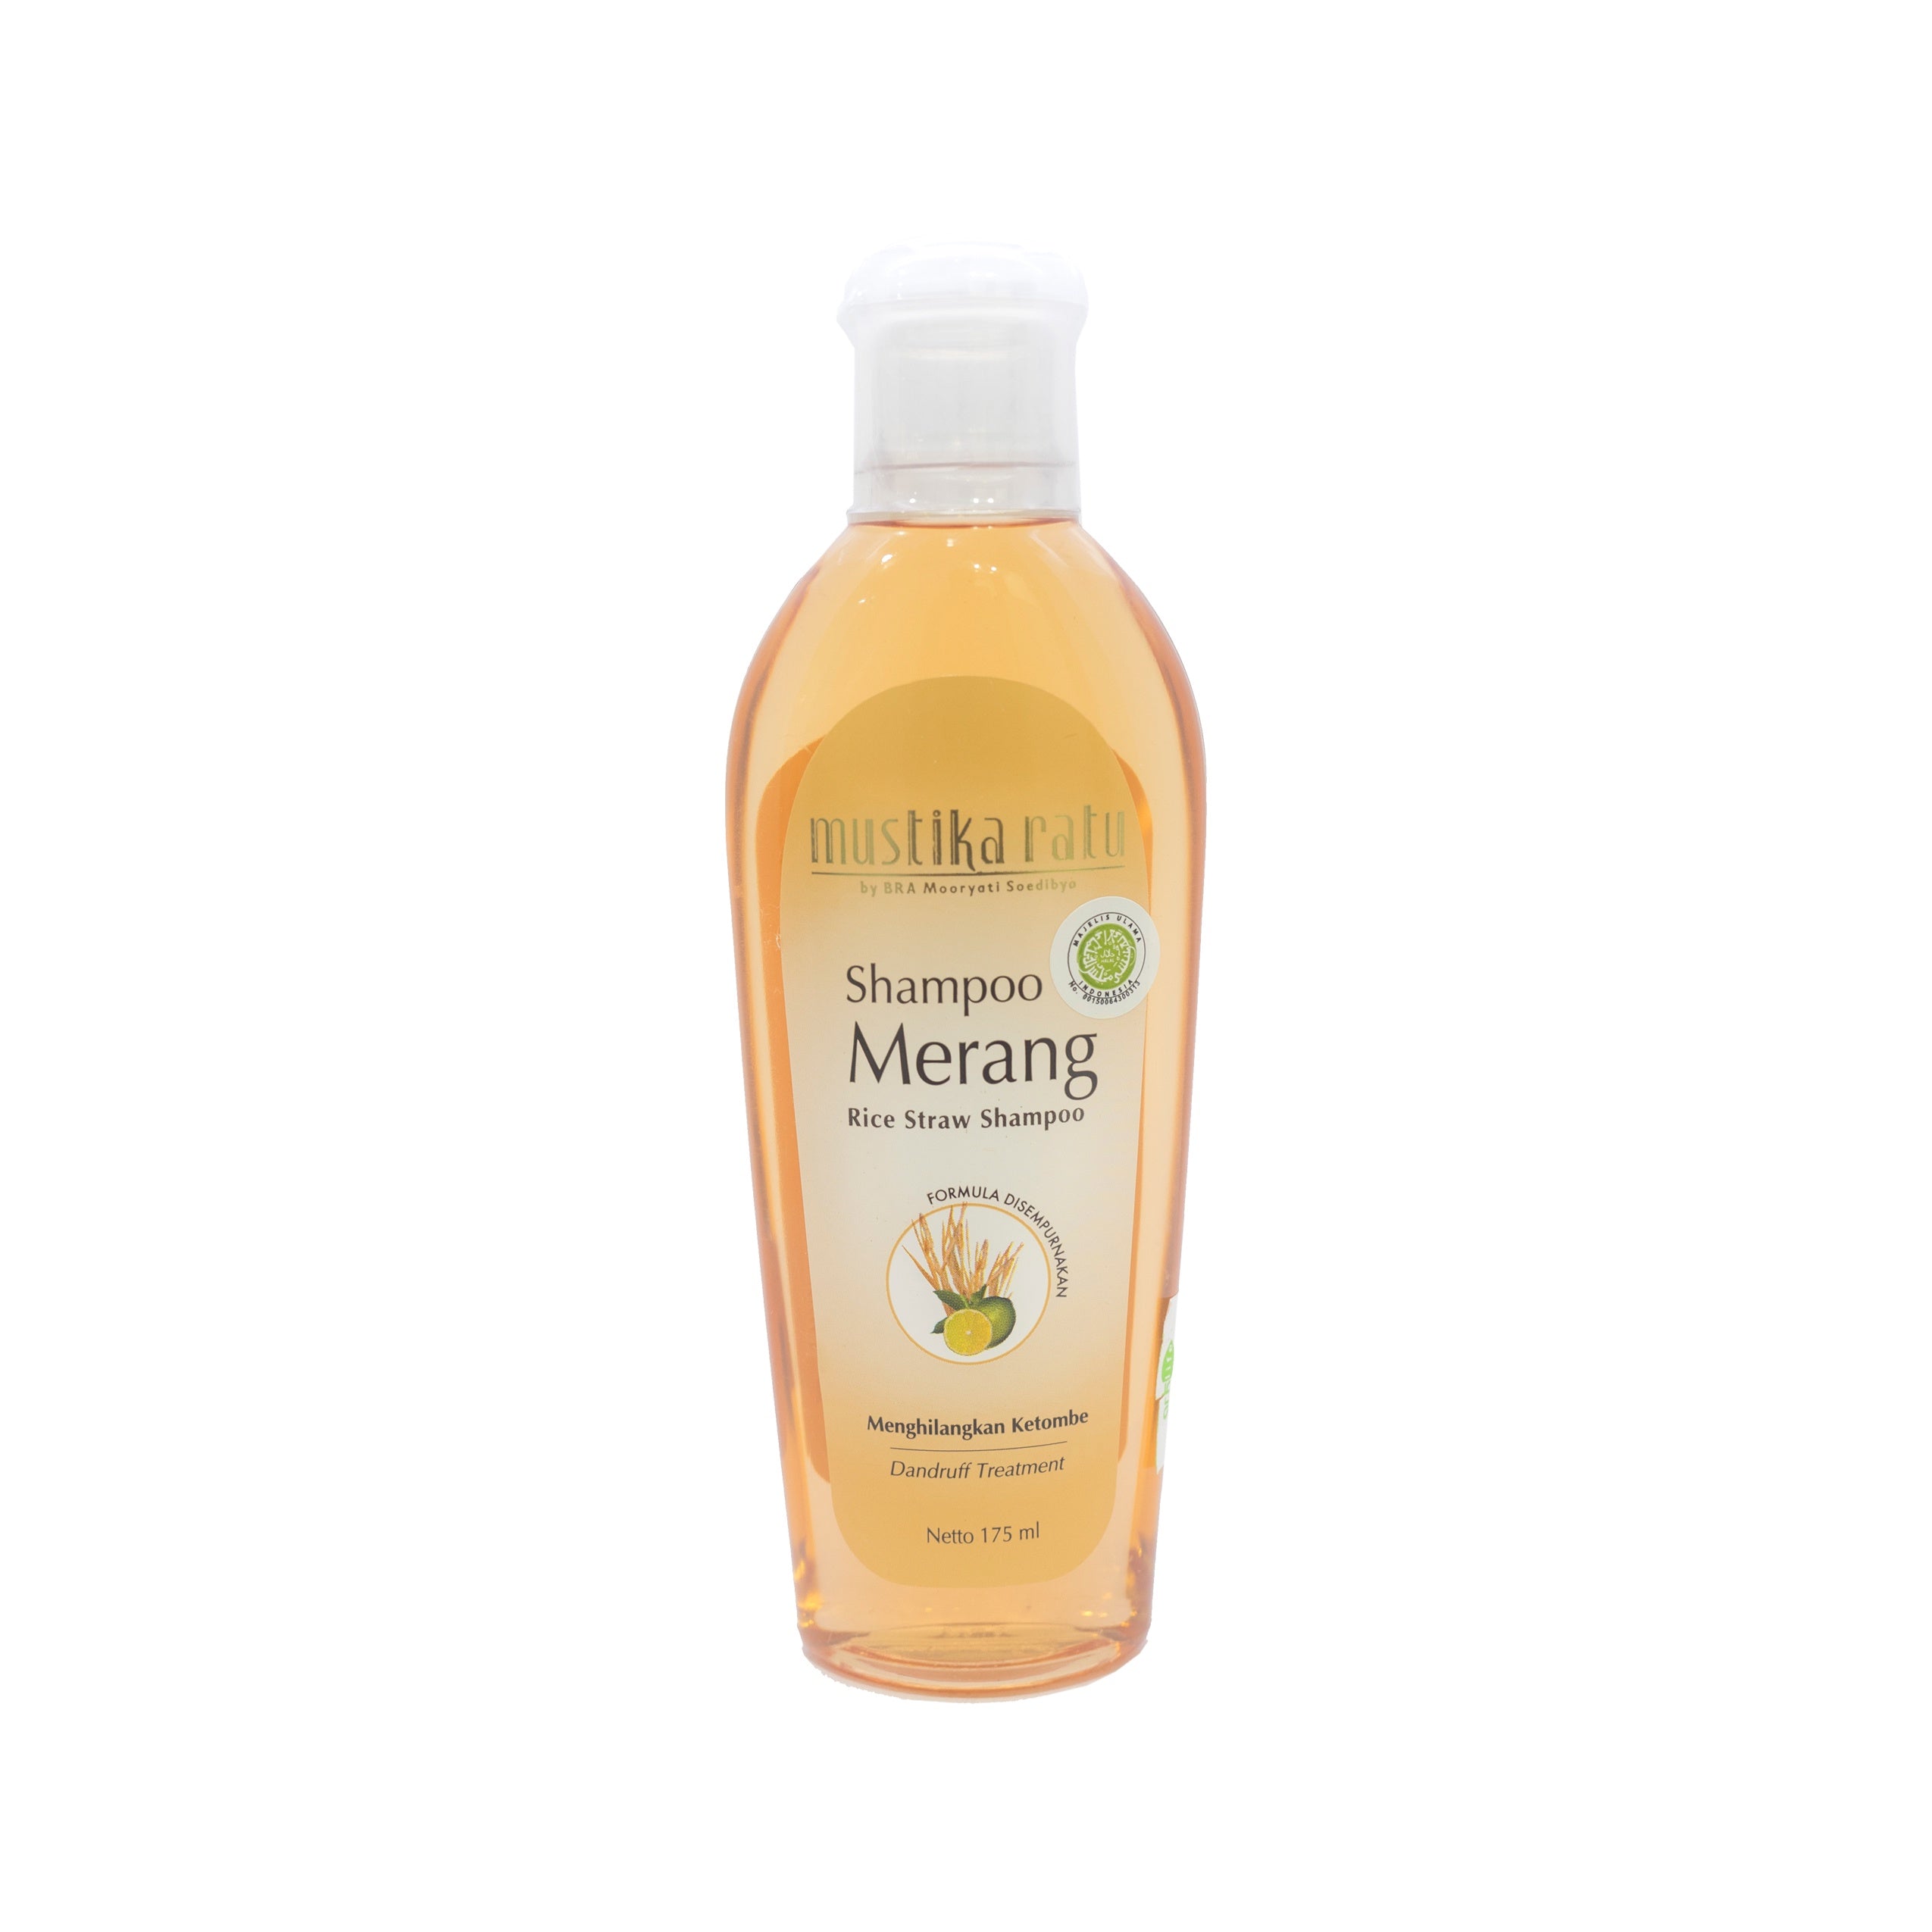 Mustika Ratu, Shampoo, Merang, 175 ml